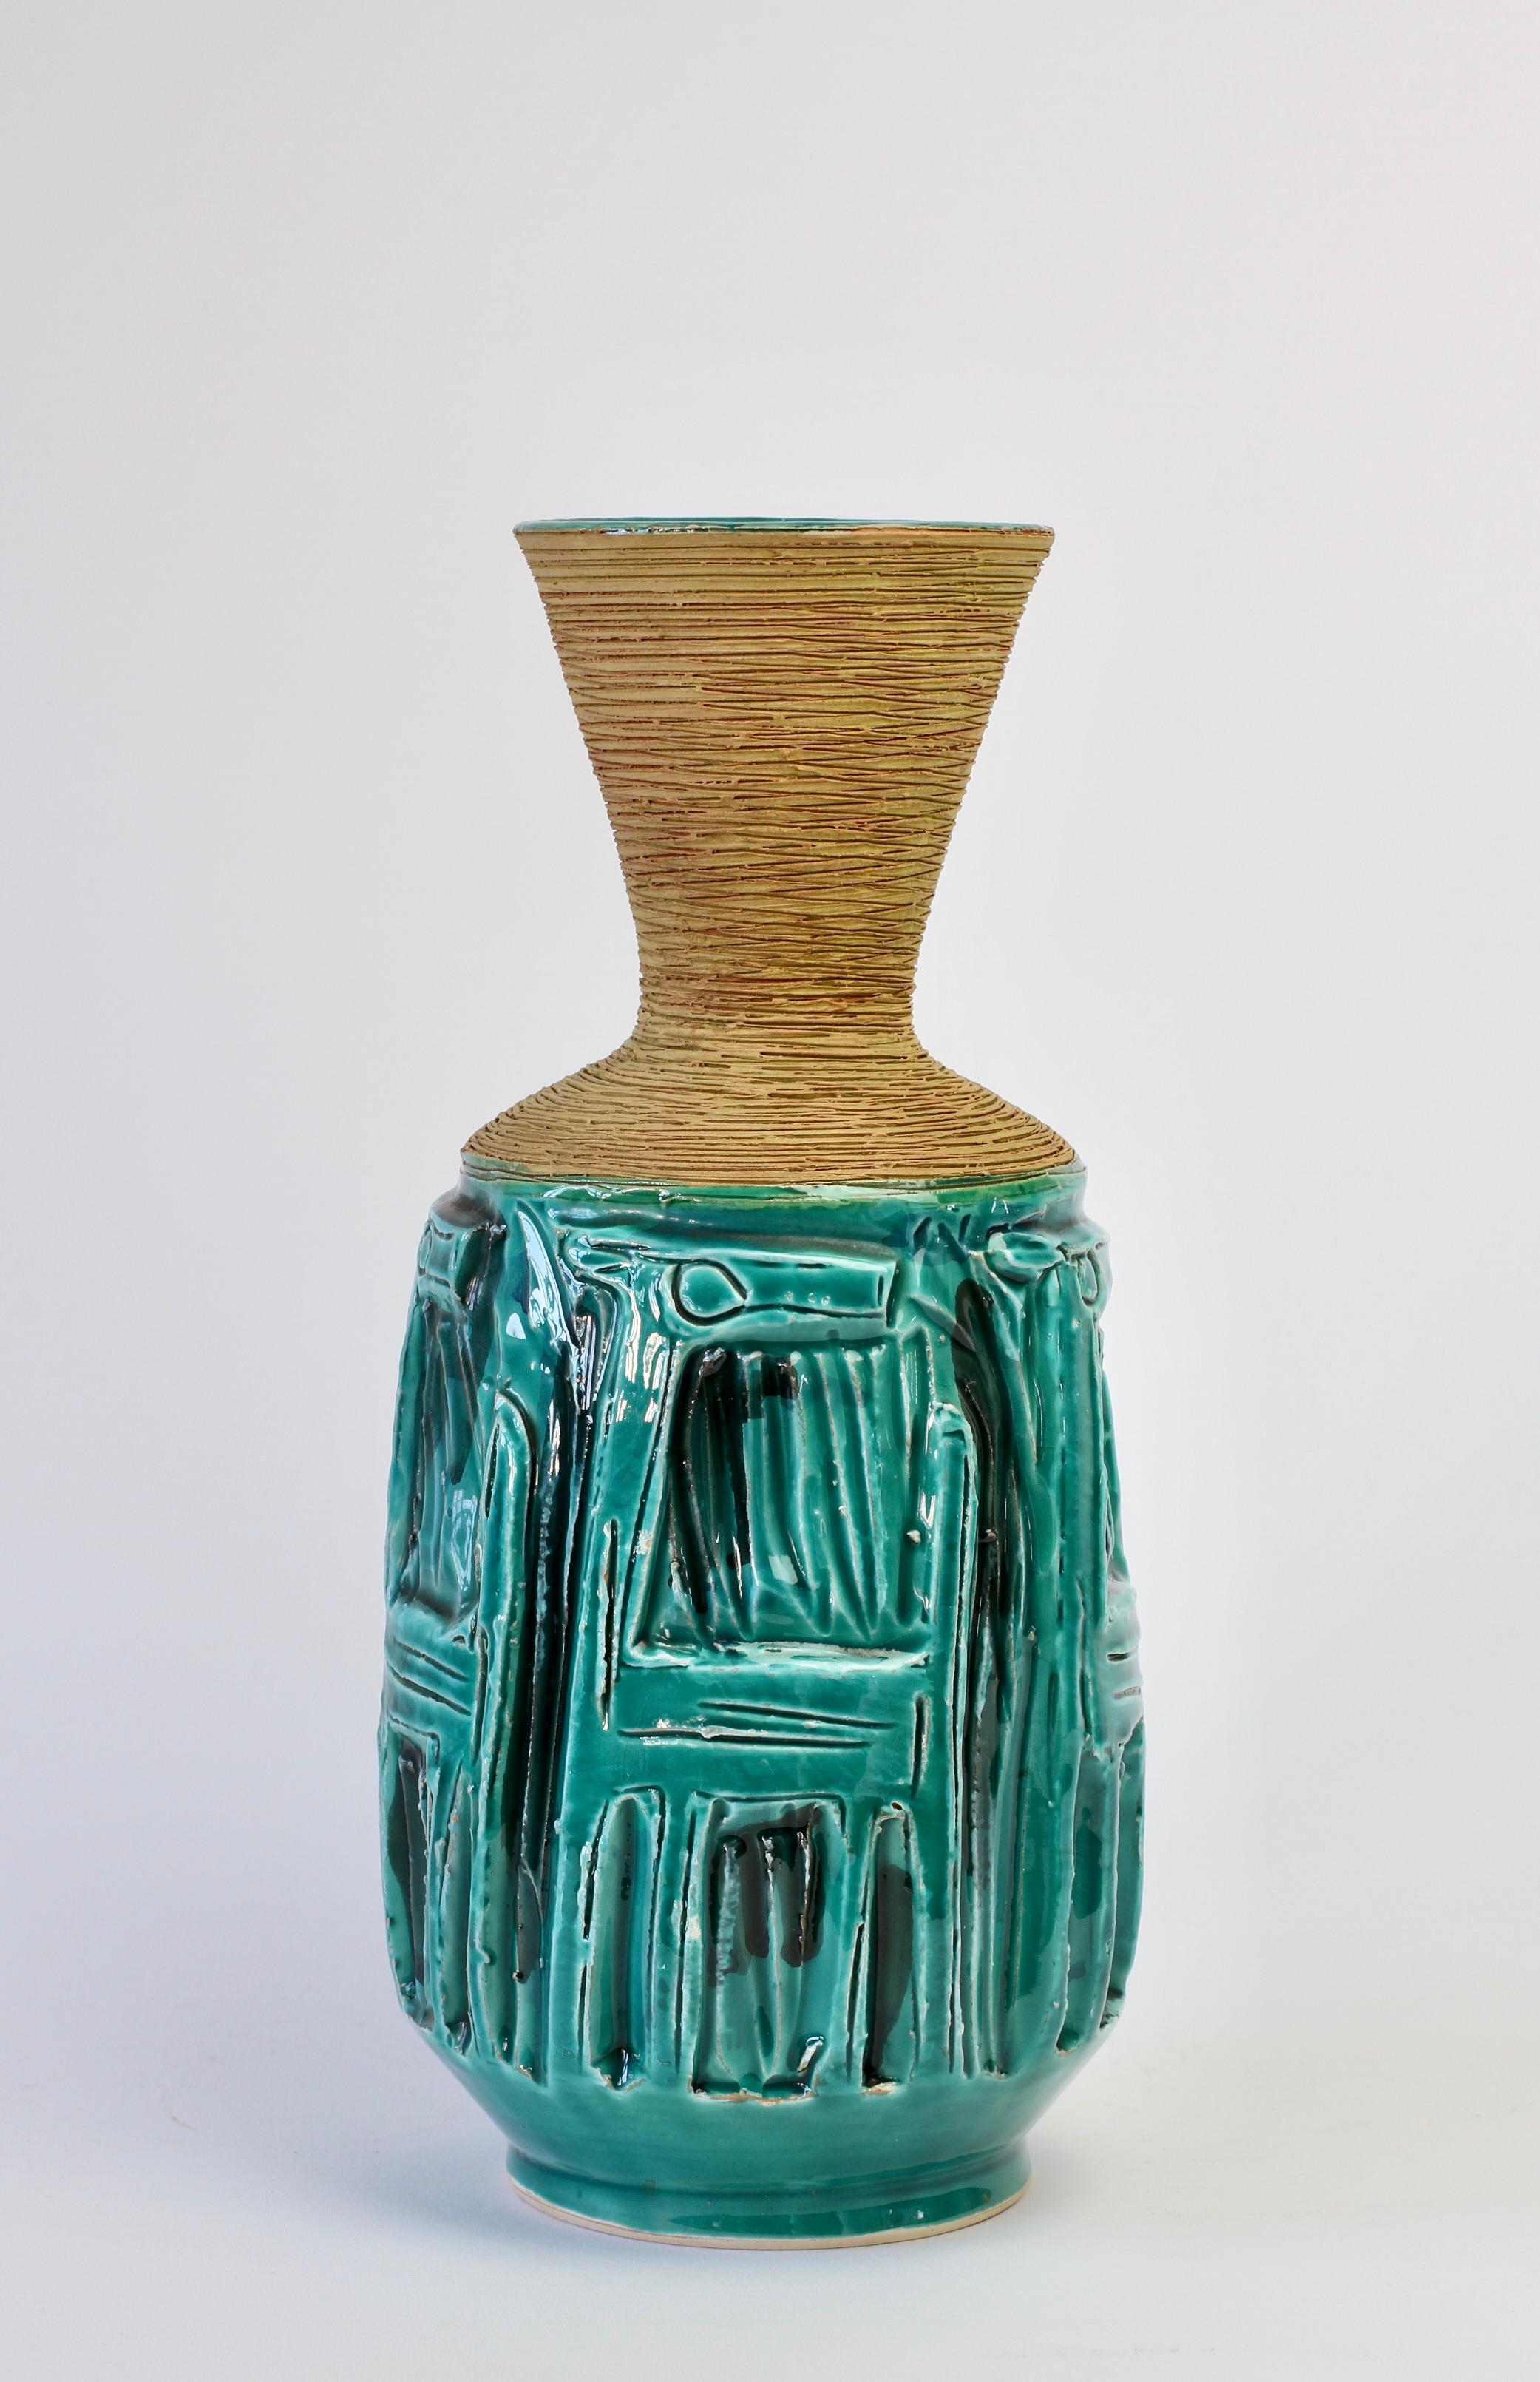 Vase magnifiquement détaillé en turquoise vibrant (vert/bleu) avec une épaule et un col texturés en sgraffite par Fratelli Fanciullacci, Italie, vers les années 1960. Merveilleux motif d'animal gaufré fantaisiste, peut-être un chien. Les ombres et